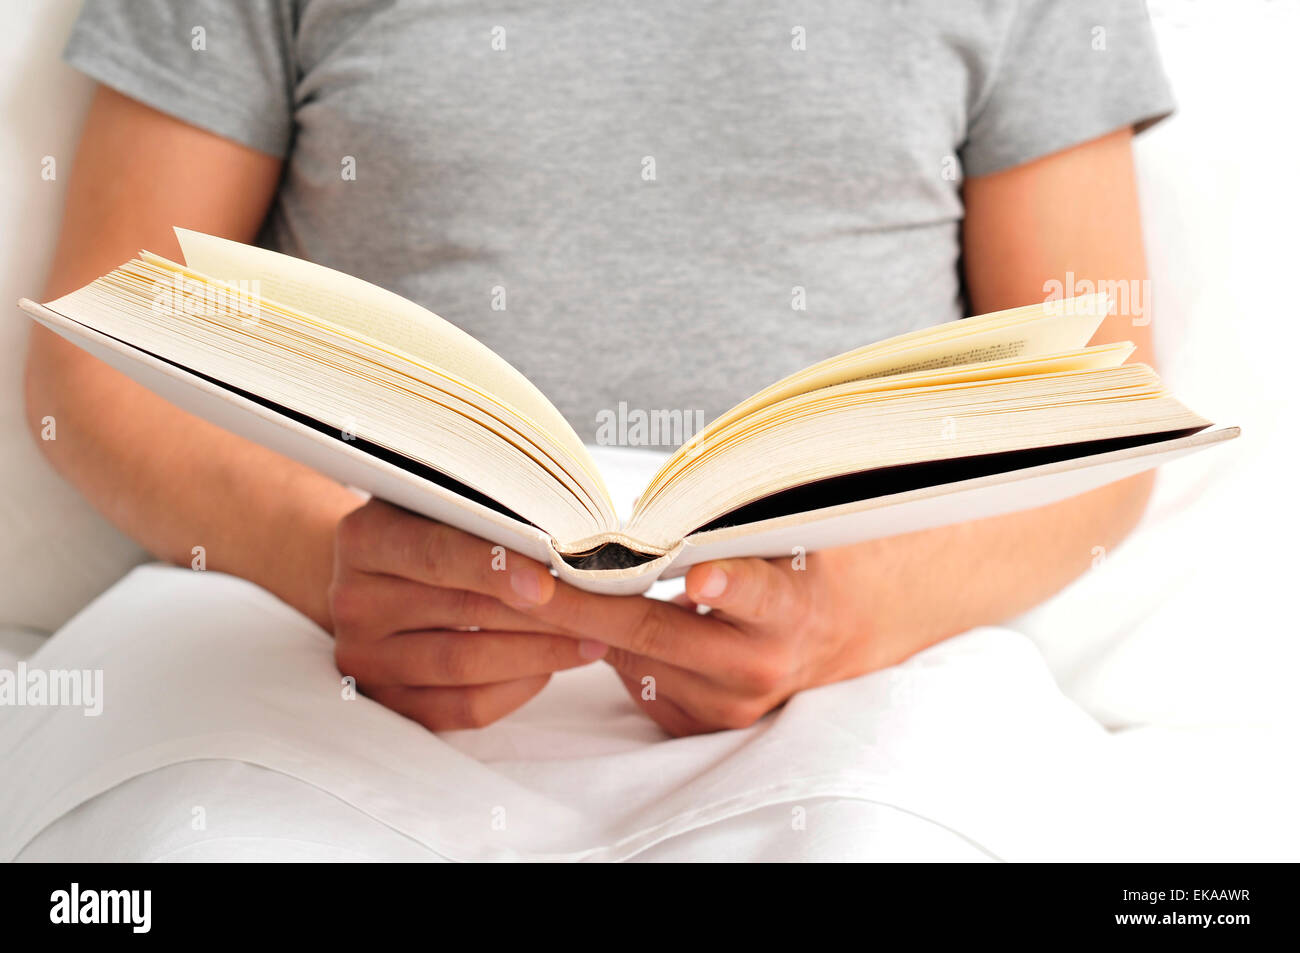 Libre d'un young caucasian man reading a book in bed Banque D'Images